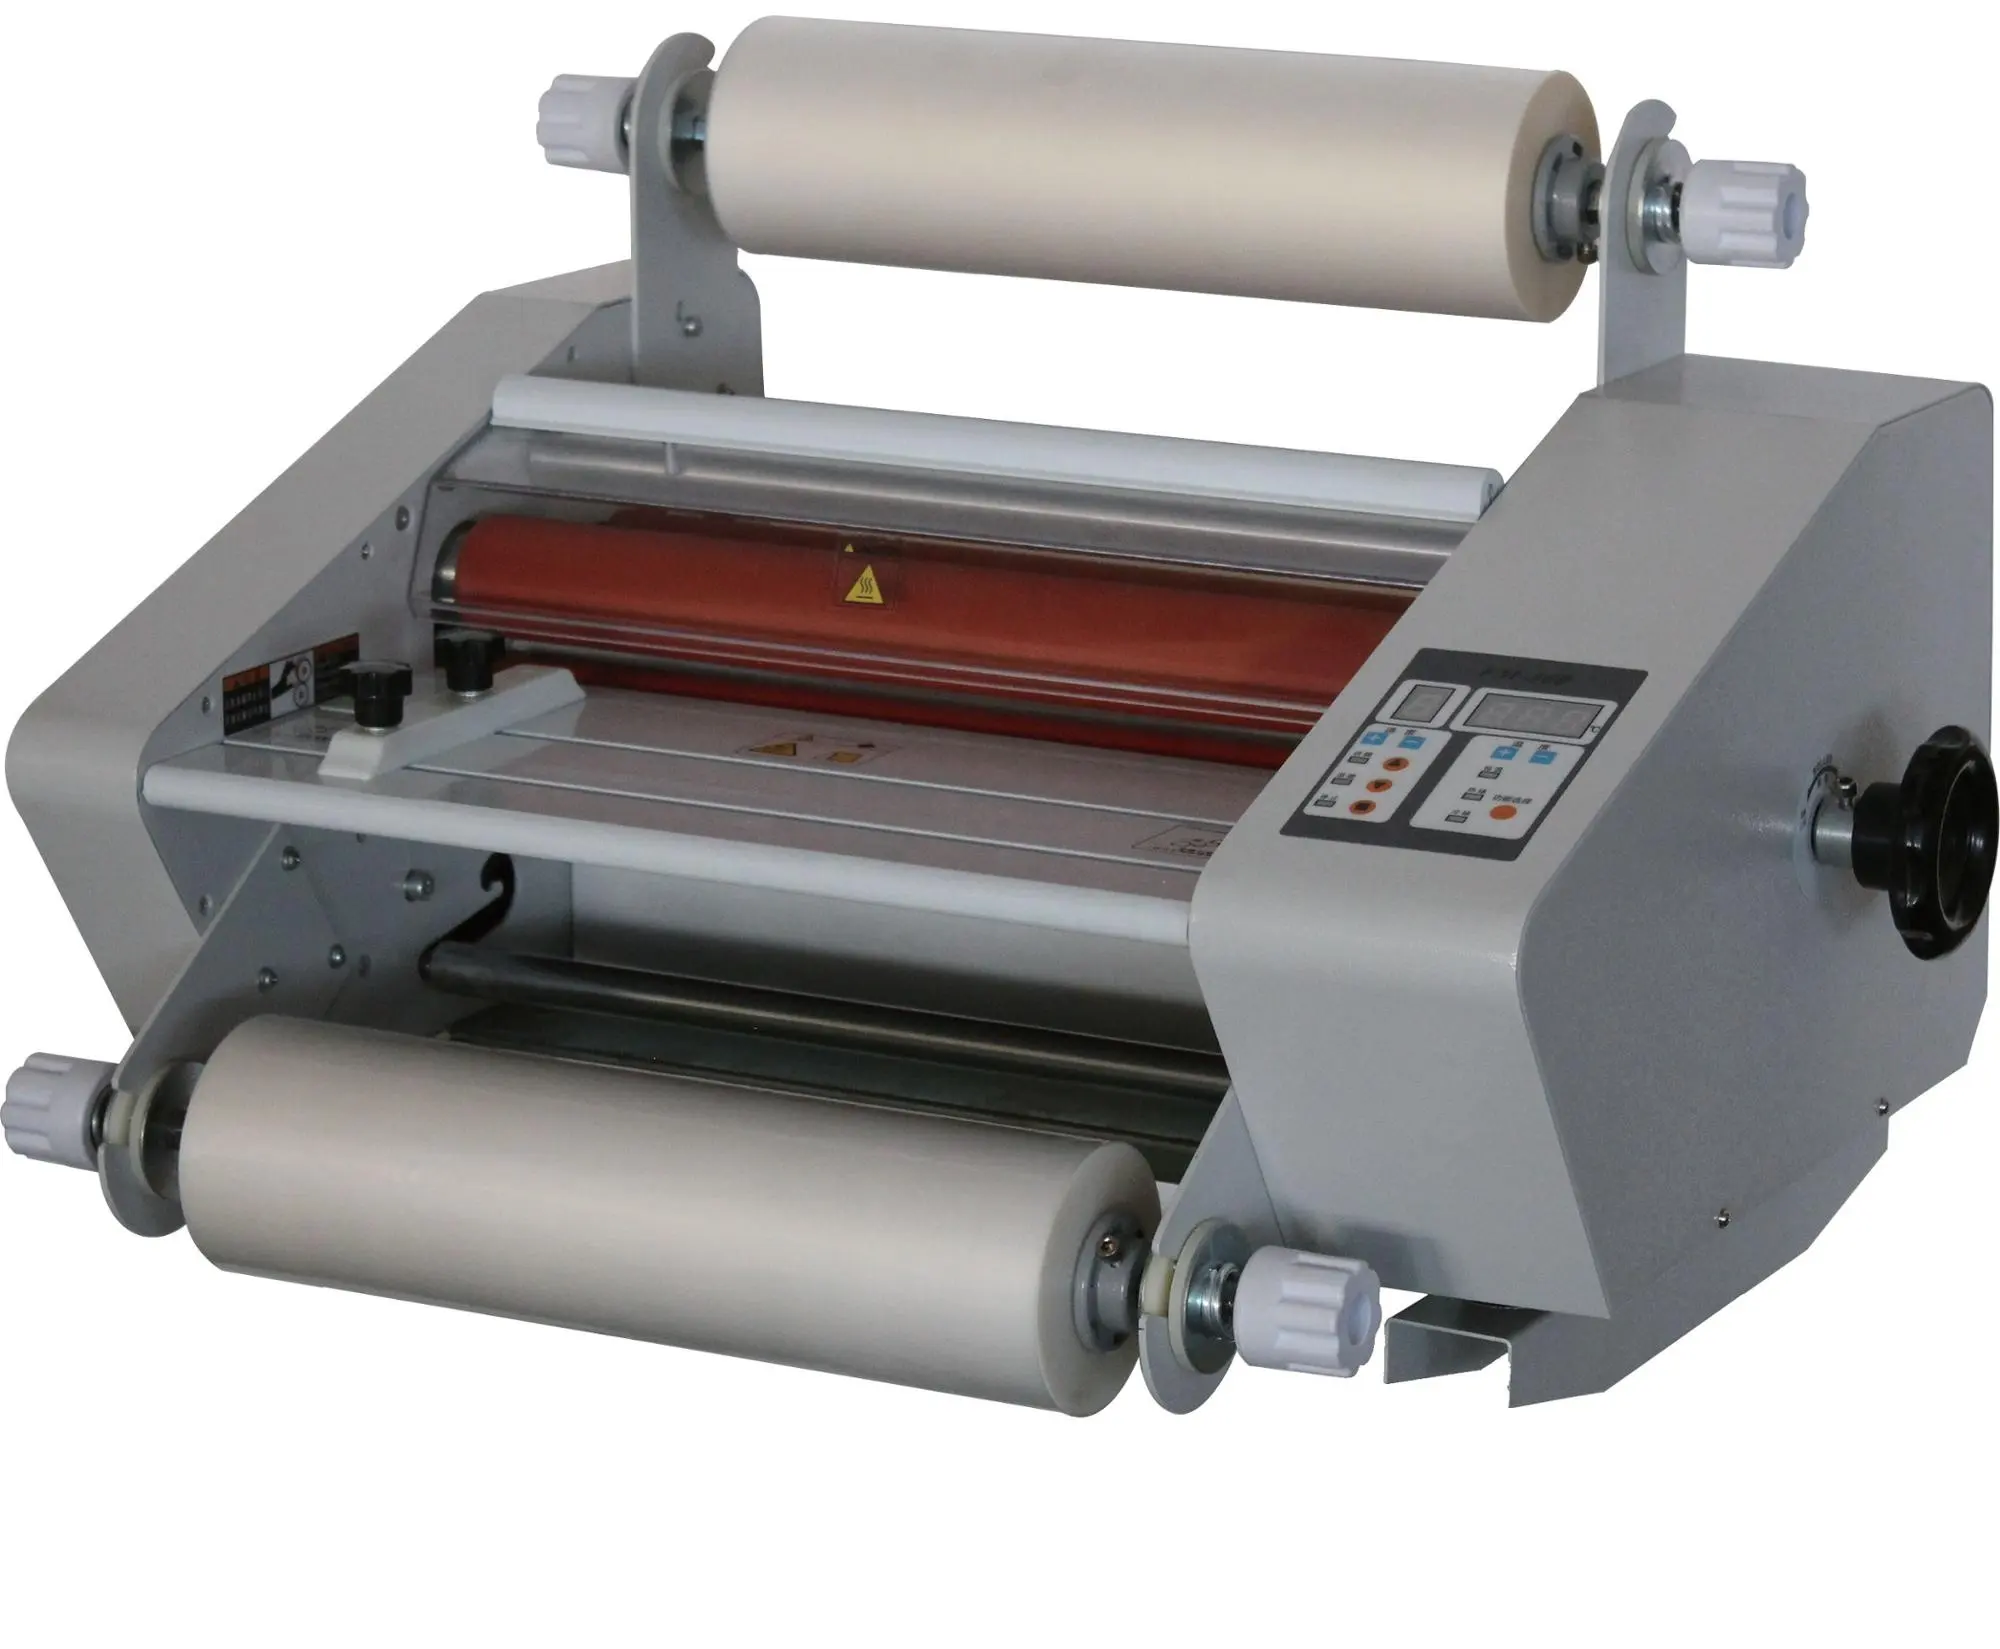 Doble 100 Hot Roll To Roll Máquina laminadora de escritorio A3 Laminador para papel